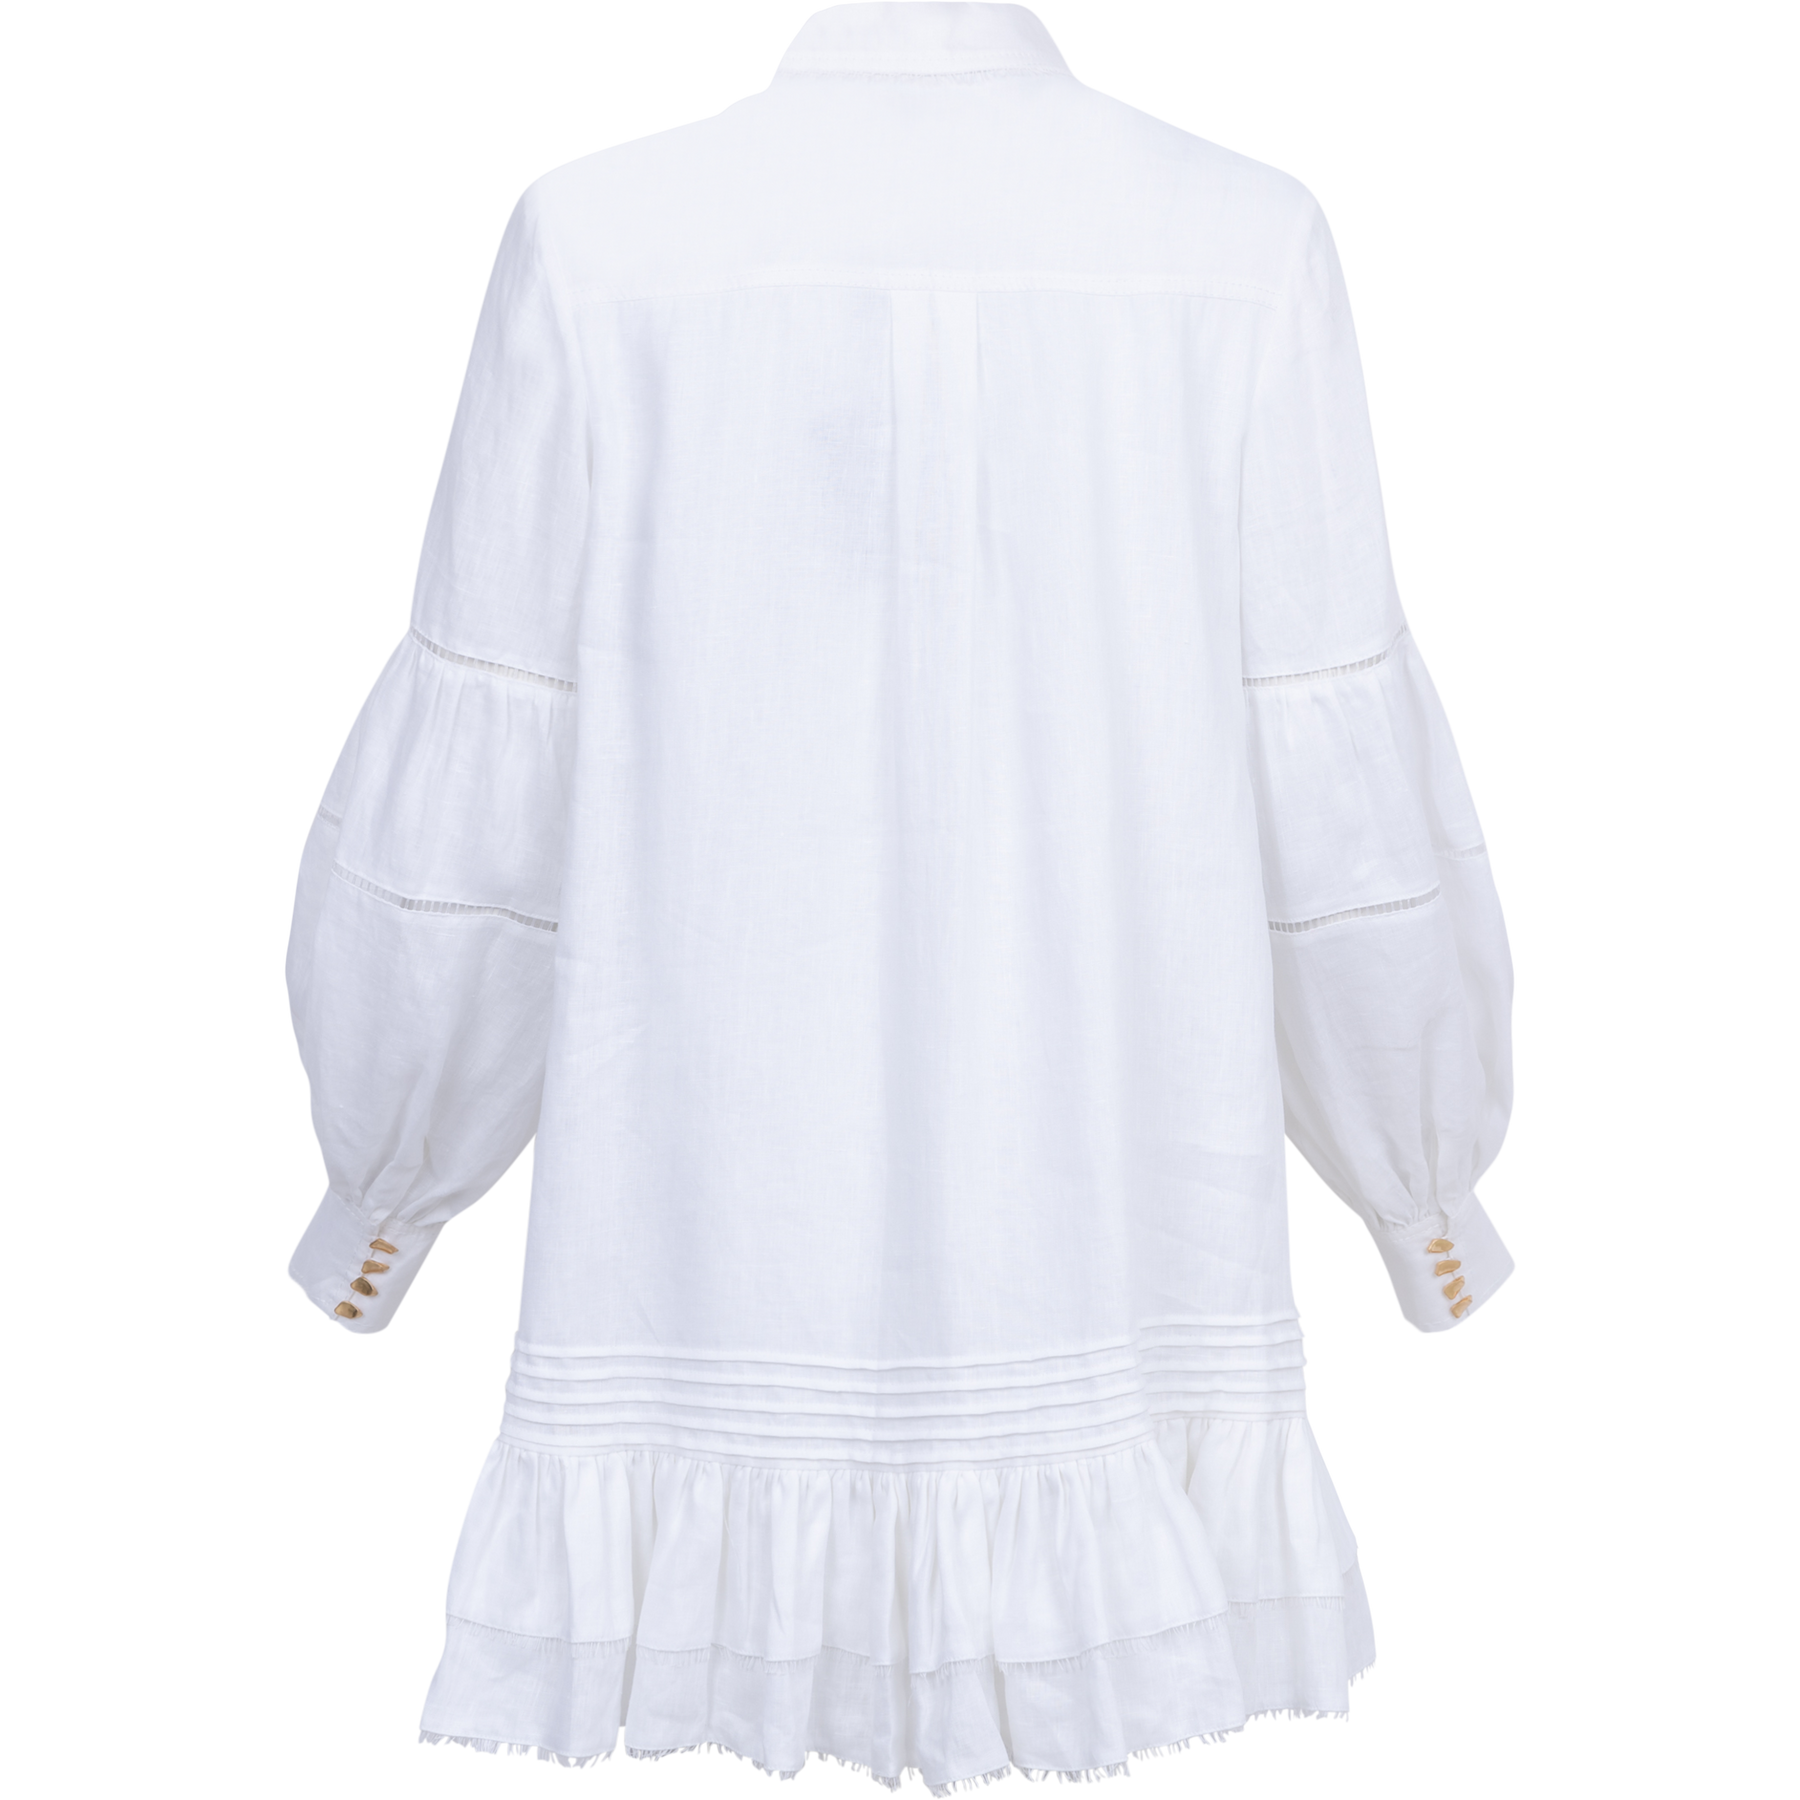 Lotus Shirt Mini Dress - Ivory